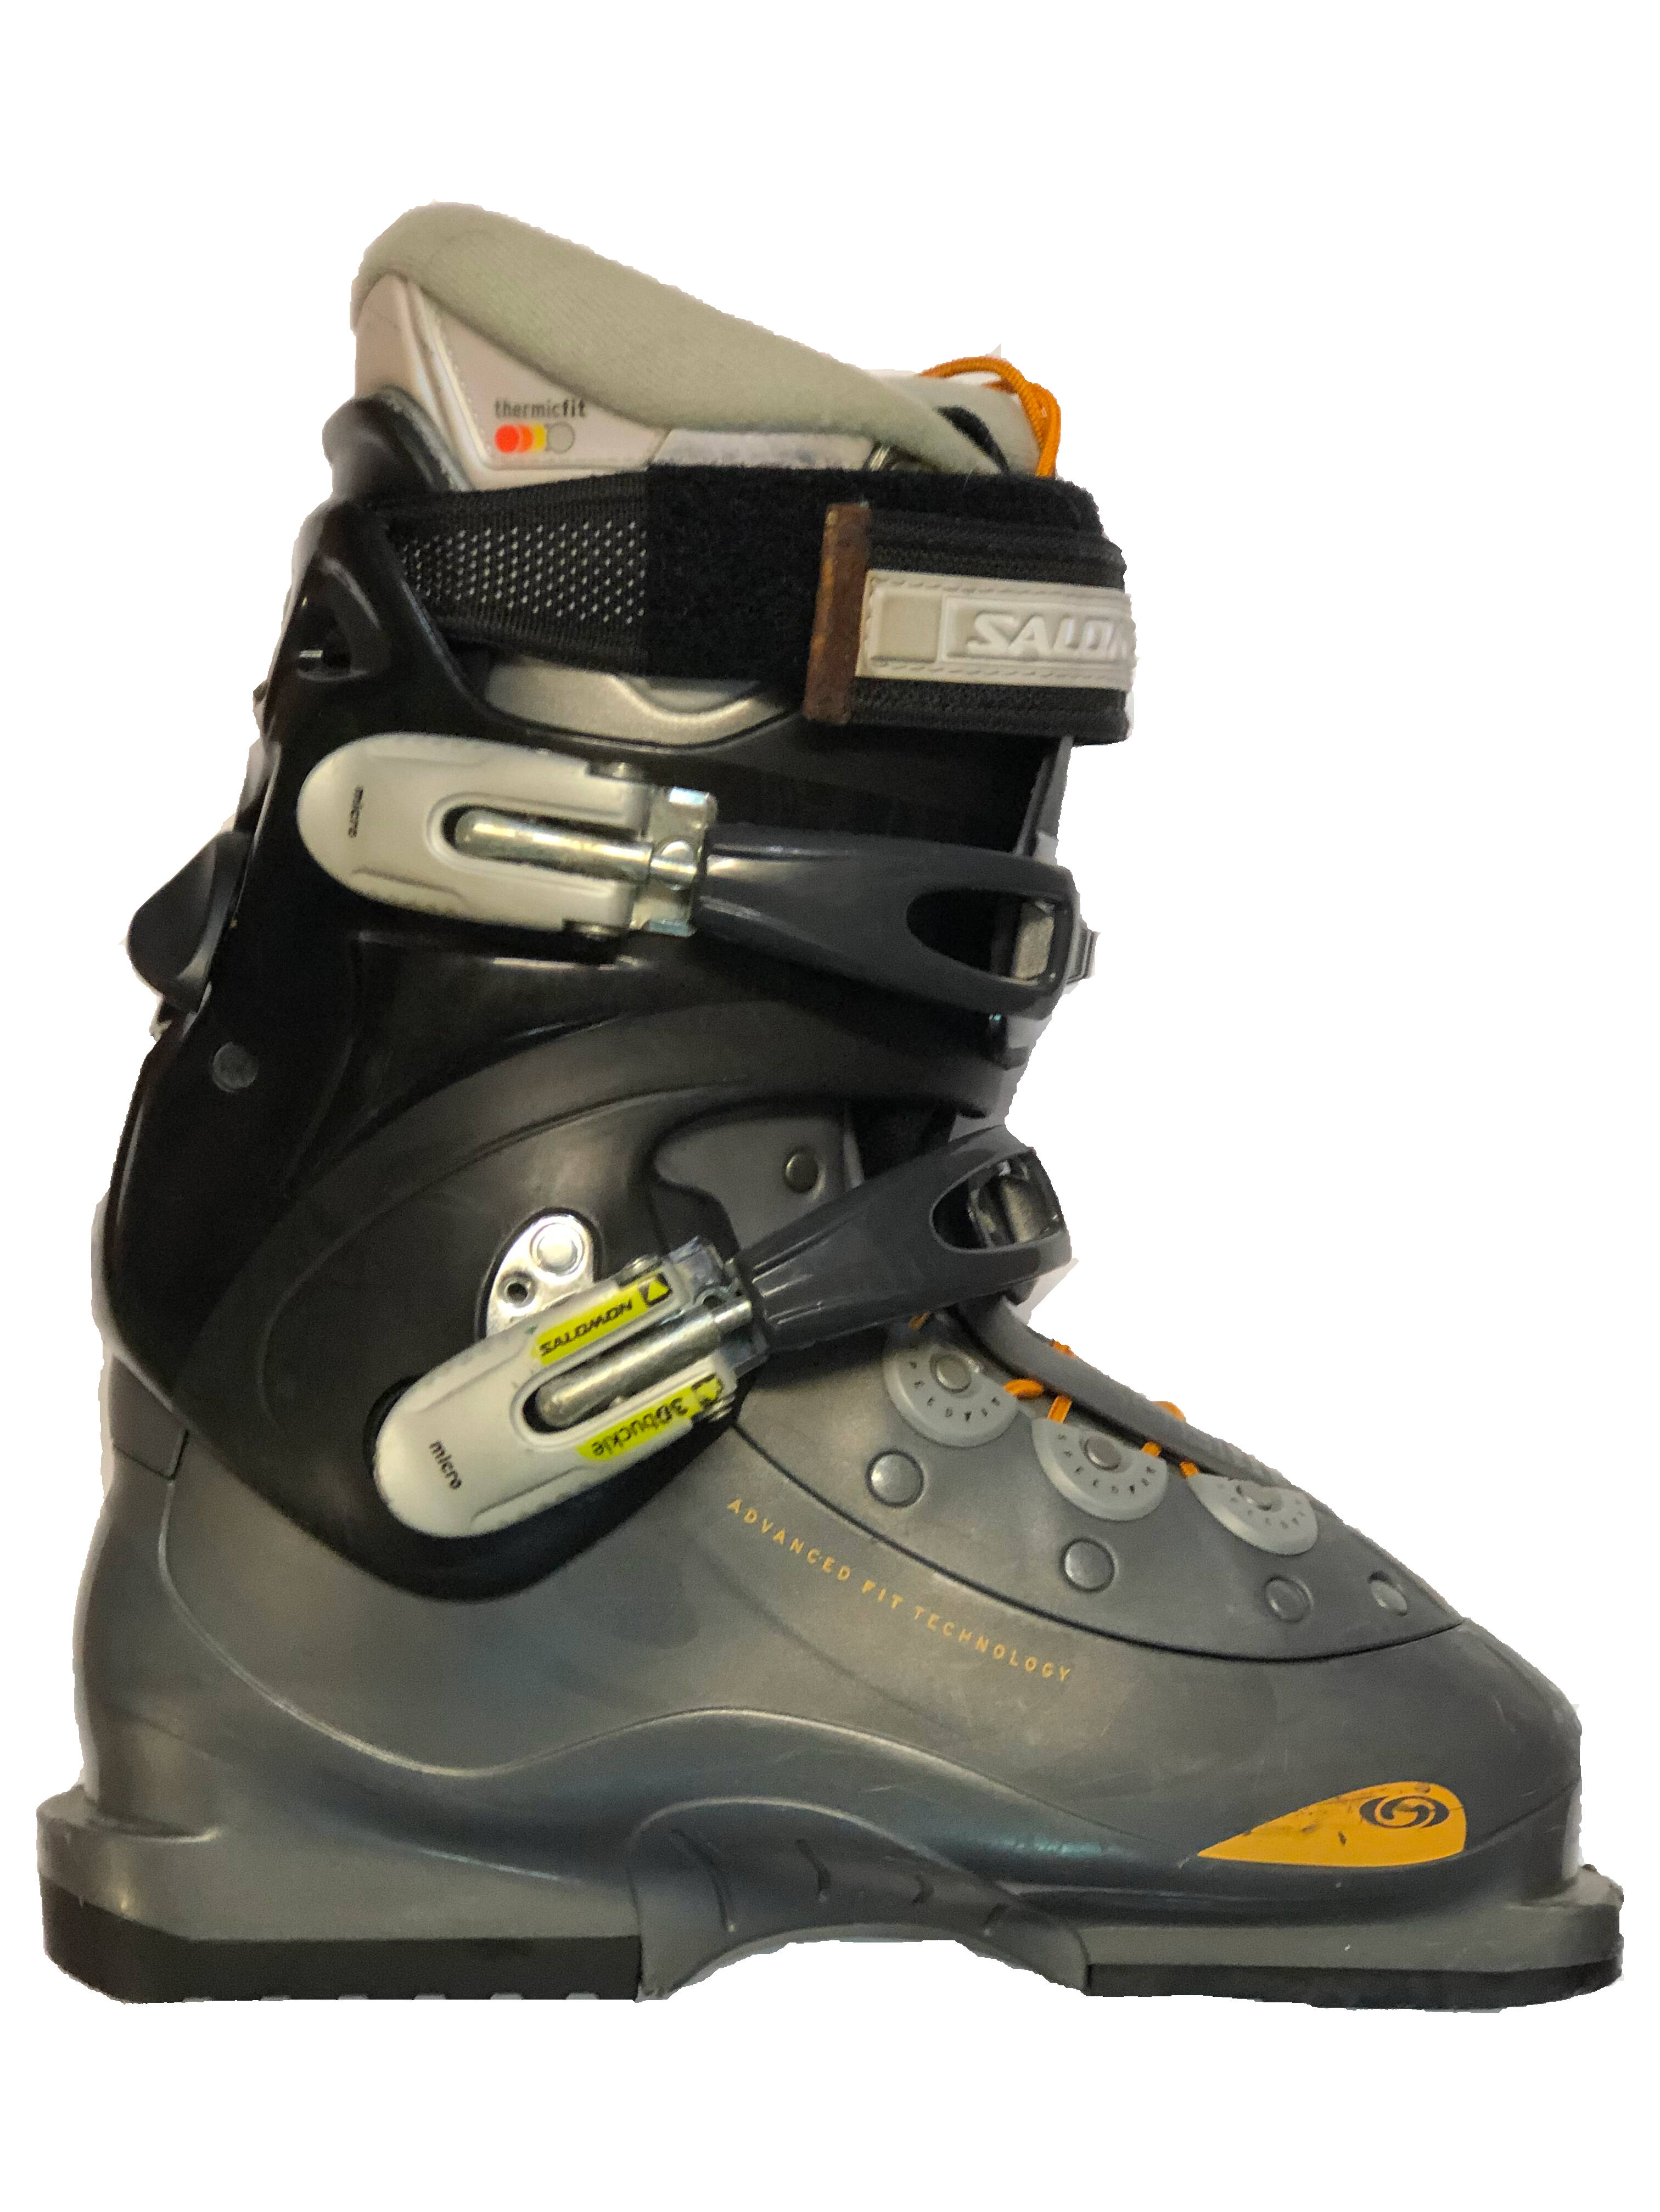 Używane buty narciarskie SALOMON 25,0 / 296mm rozmiar 39 :: Sklep Sportowy  - outlet sportowy, koncówki kolekcji, wyprzedaże, narty, deski, wiązania,  sprzet narciarski, buty sportowe